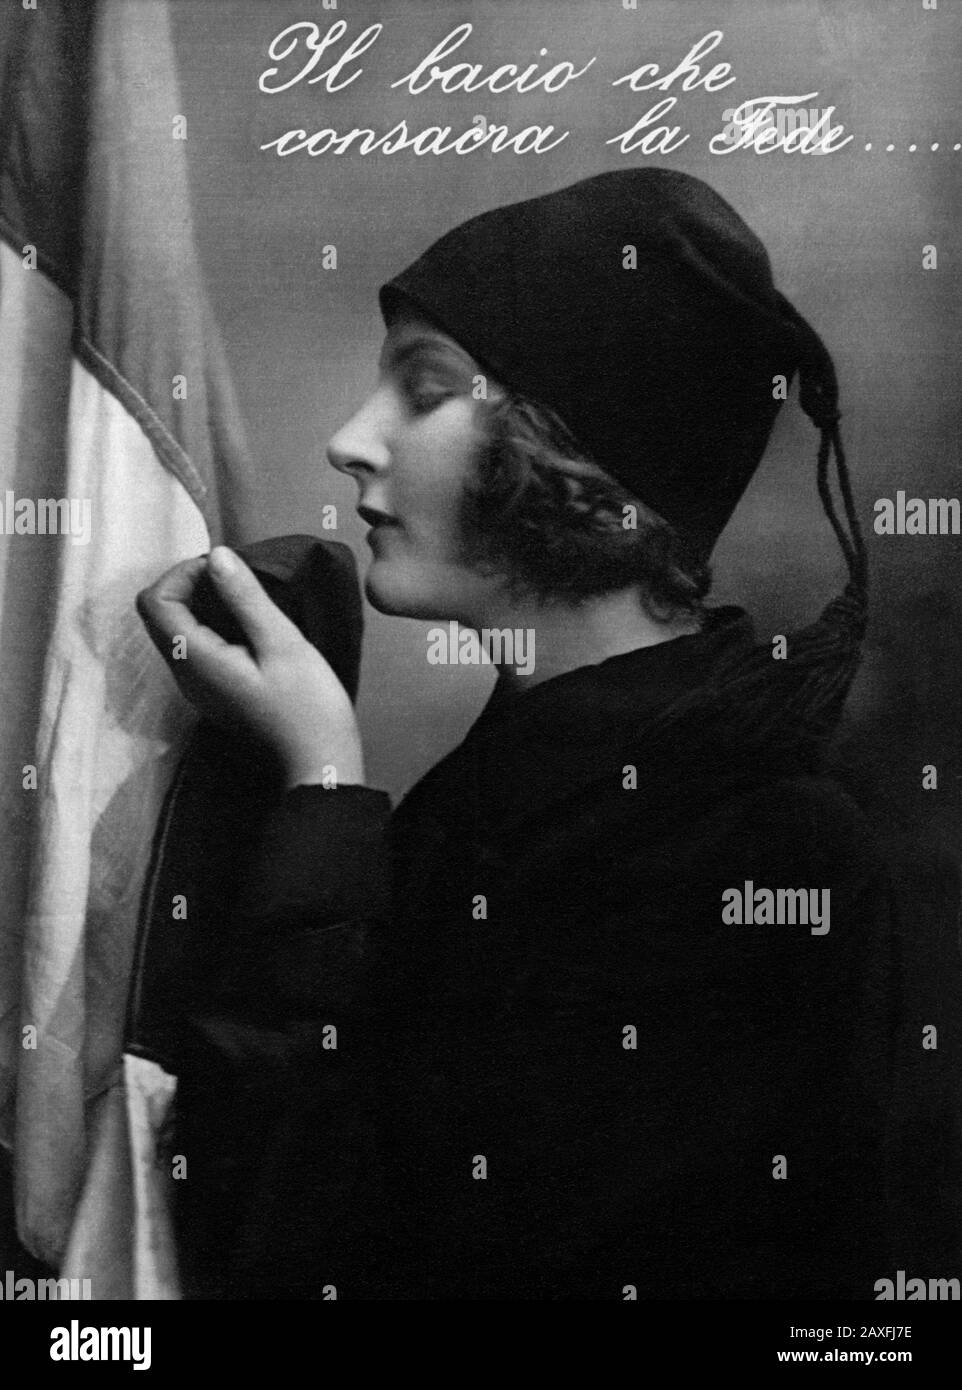 1925 ca , ITALIA : giovane ragazza italiana fascista che bacia LA BANDIERA ITALIANA con il fascista FEZ Hat . Cartolina d'epoca ( il BACIO che CONSACRA LA FEDE : il bacio che consacra la fede ) - PROPAGANDA - FASCISMO - FASCISMO - ANNI venti - AUTARCHIA - AUTARCHICO - BANDIERA TRICOLORE ITALIANA - ITALIA - 20's - 20's - ritratto - ritatto - ragazza - donna - Profilo - cappello - CAMICIA NERA - CAMIMIMICIA nera - FOTO STORICHE - STORIA FOTO - MAGAZZINO - ITALIA - ITALIA - XX SECOLO - NOVECENTO © ARCHIVIO GBB / Foto Stock